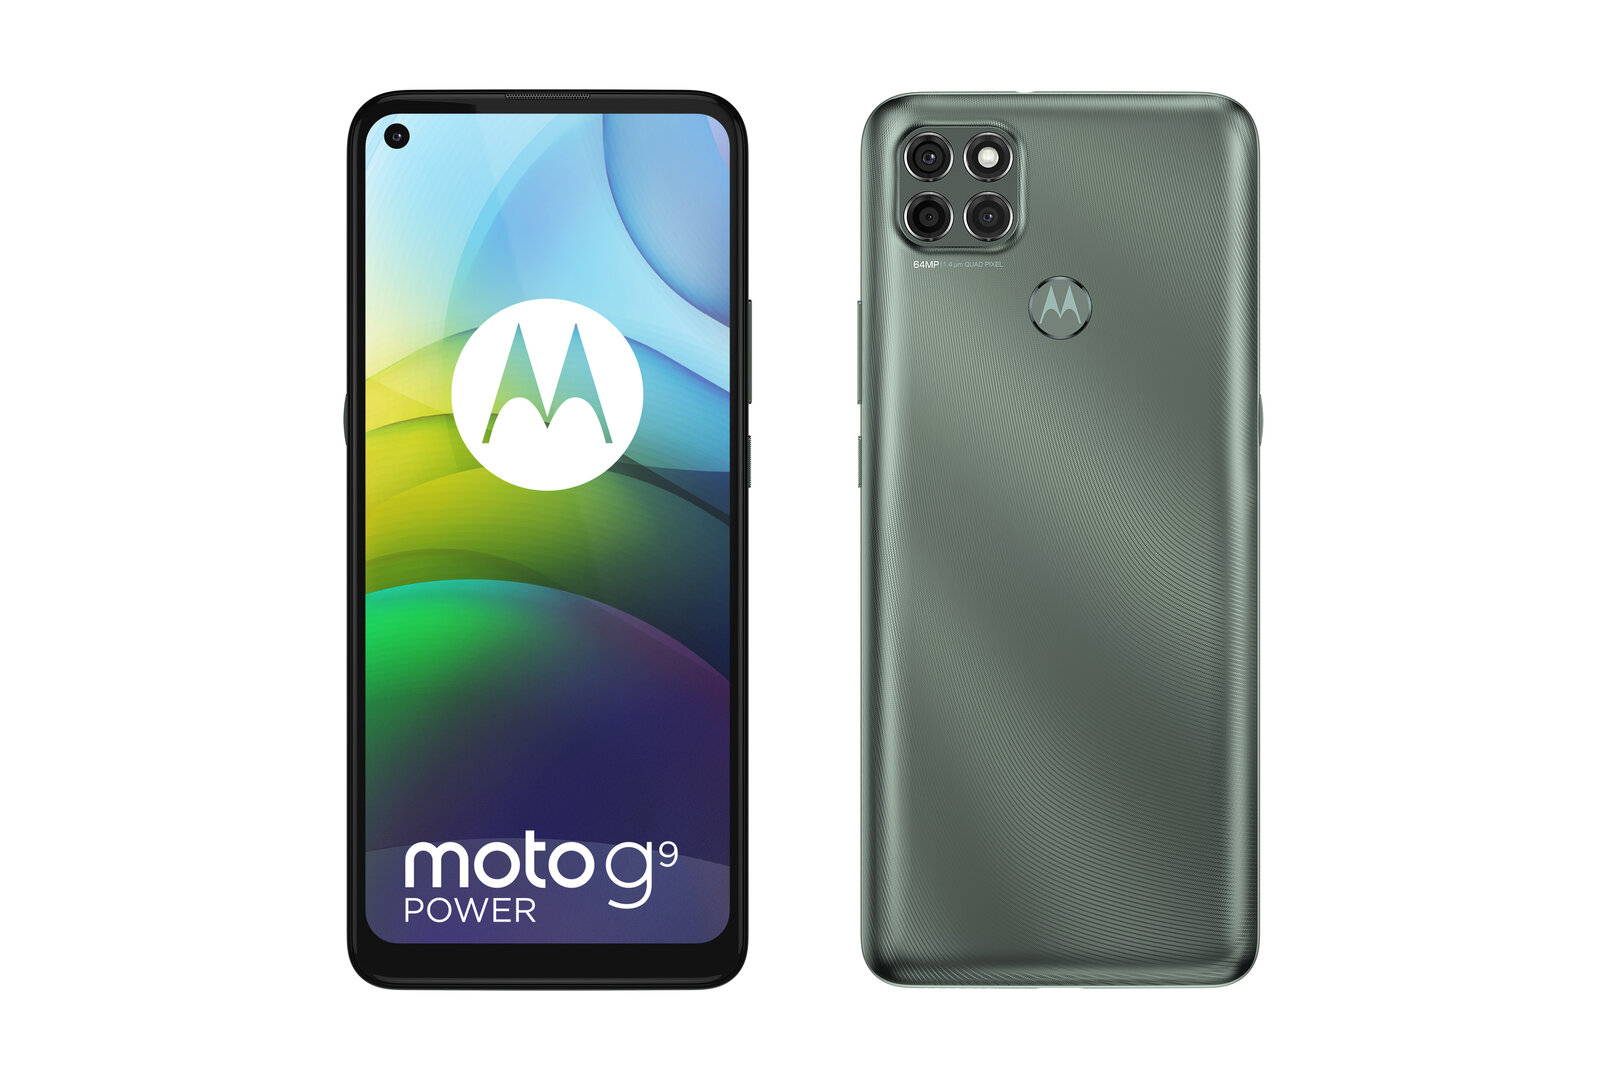 Motorola revela a Moto G9 Power com um Snapdragon